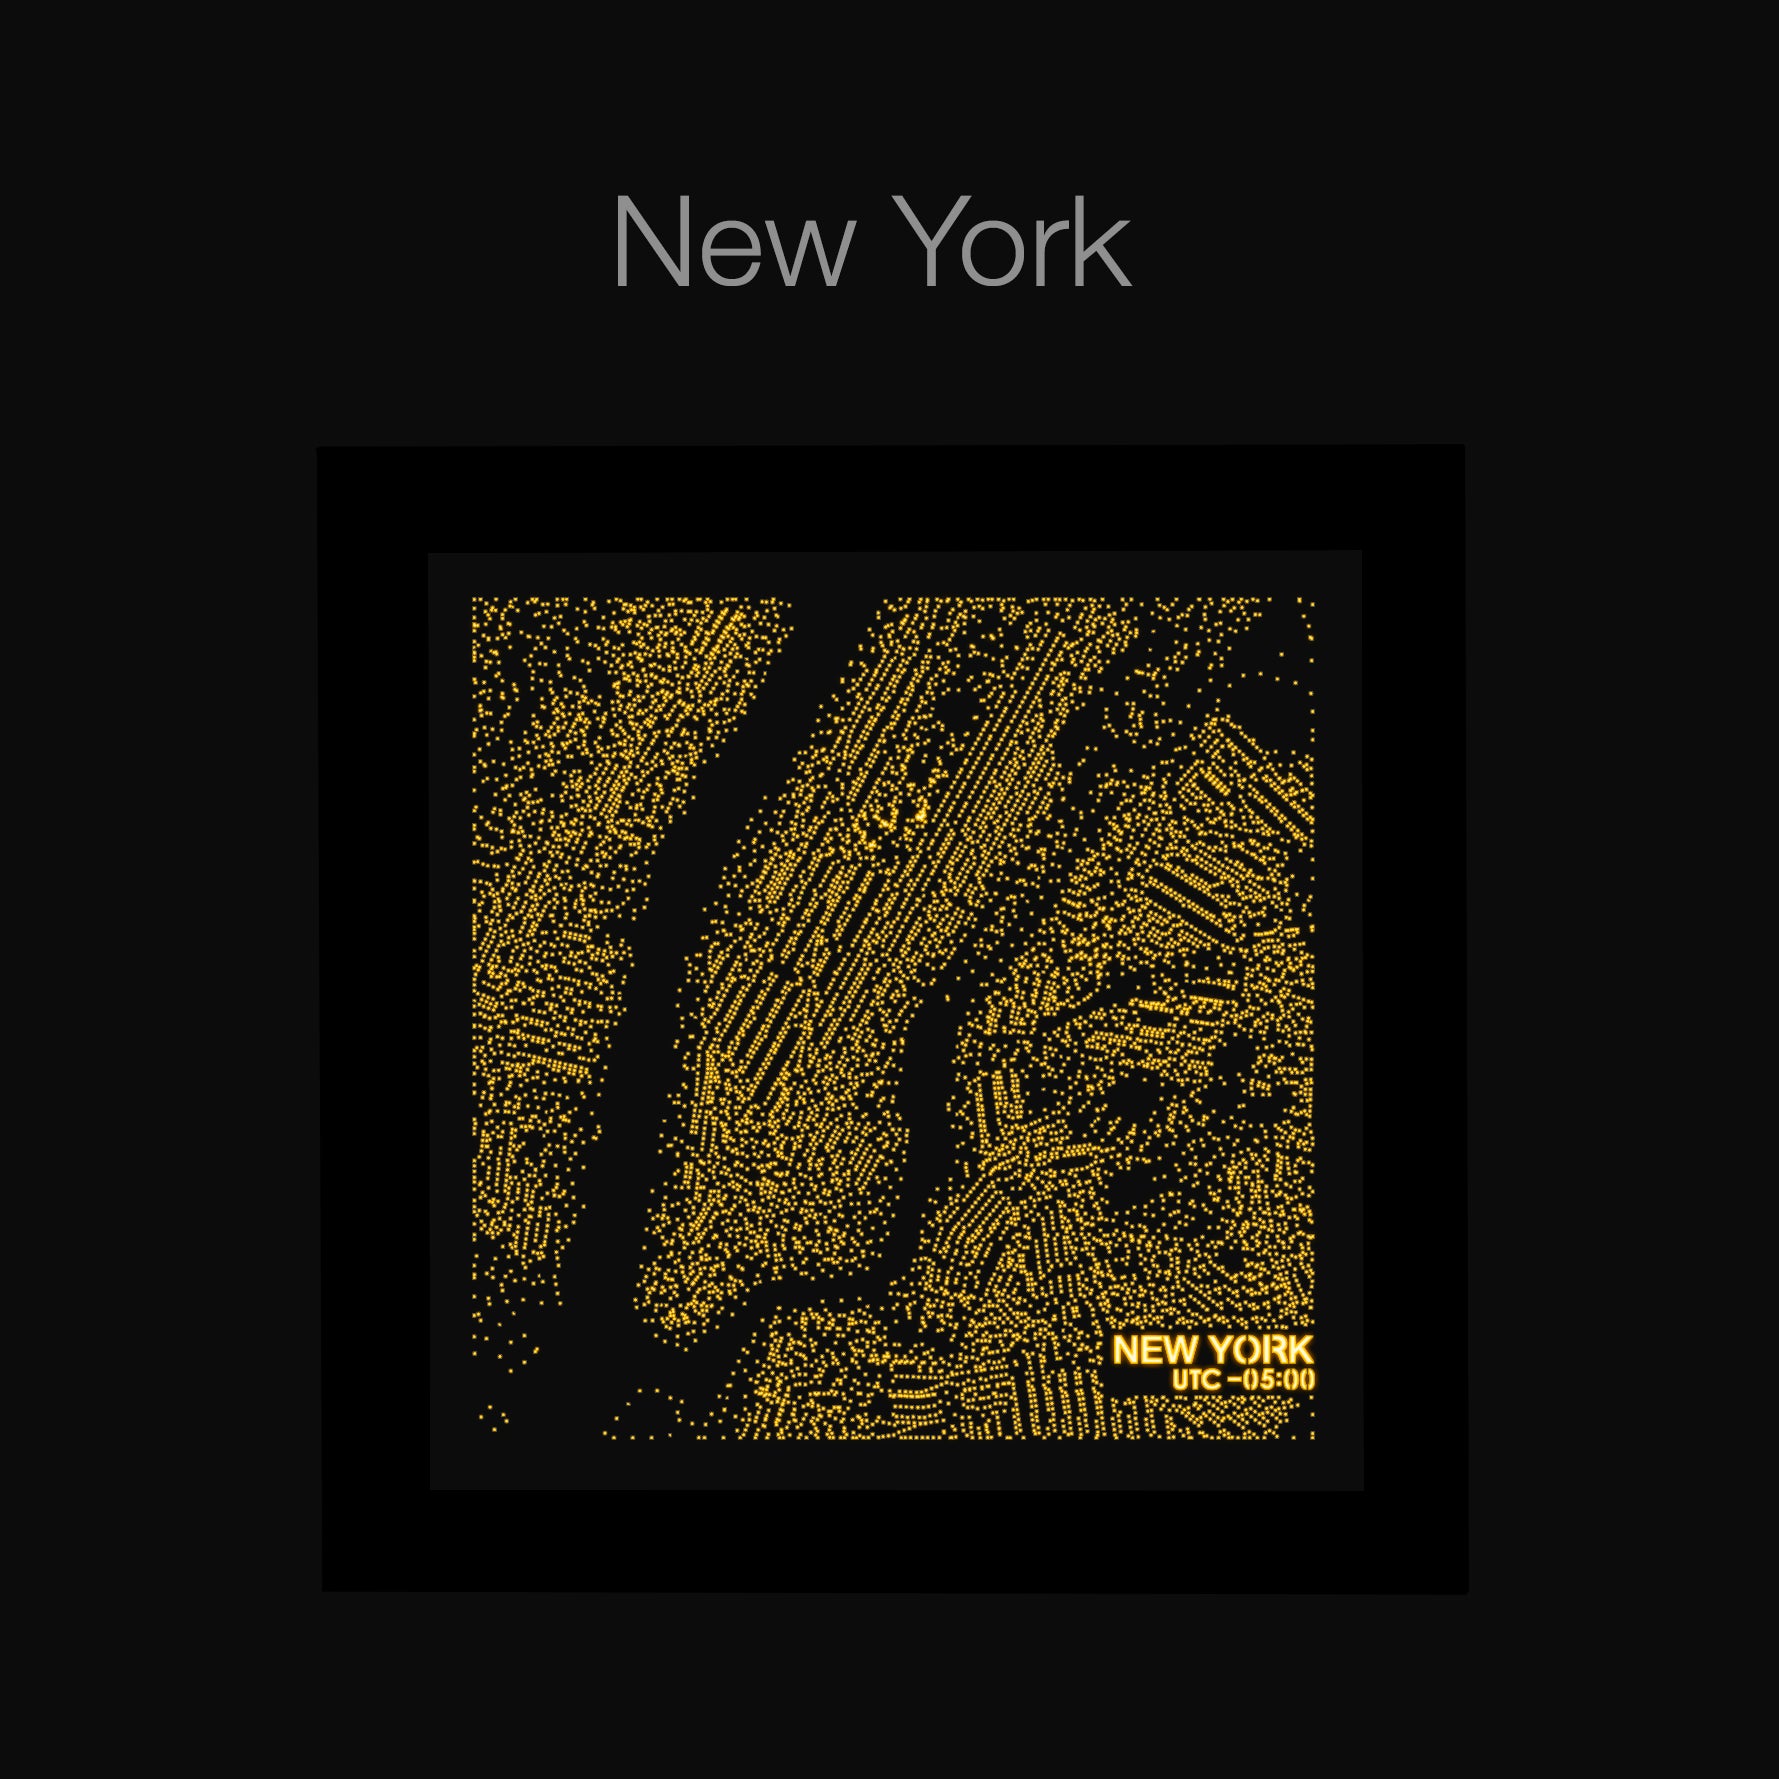 NITELANDING New York Map - Lighting Decoration Art - ZERO DEGREE